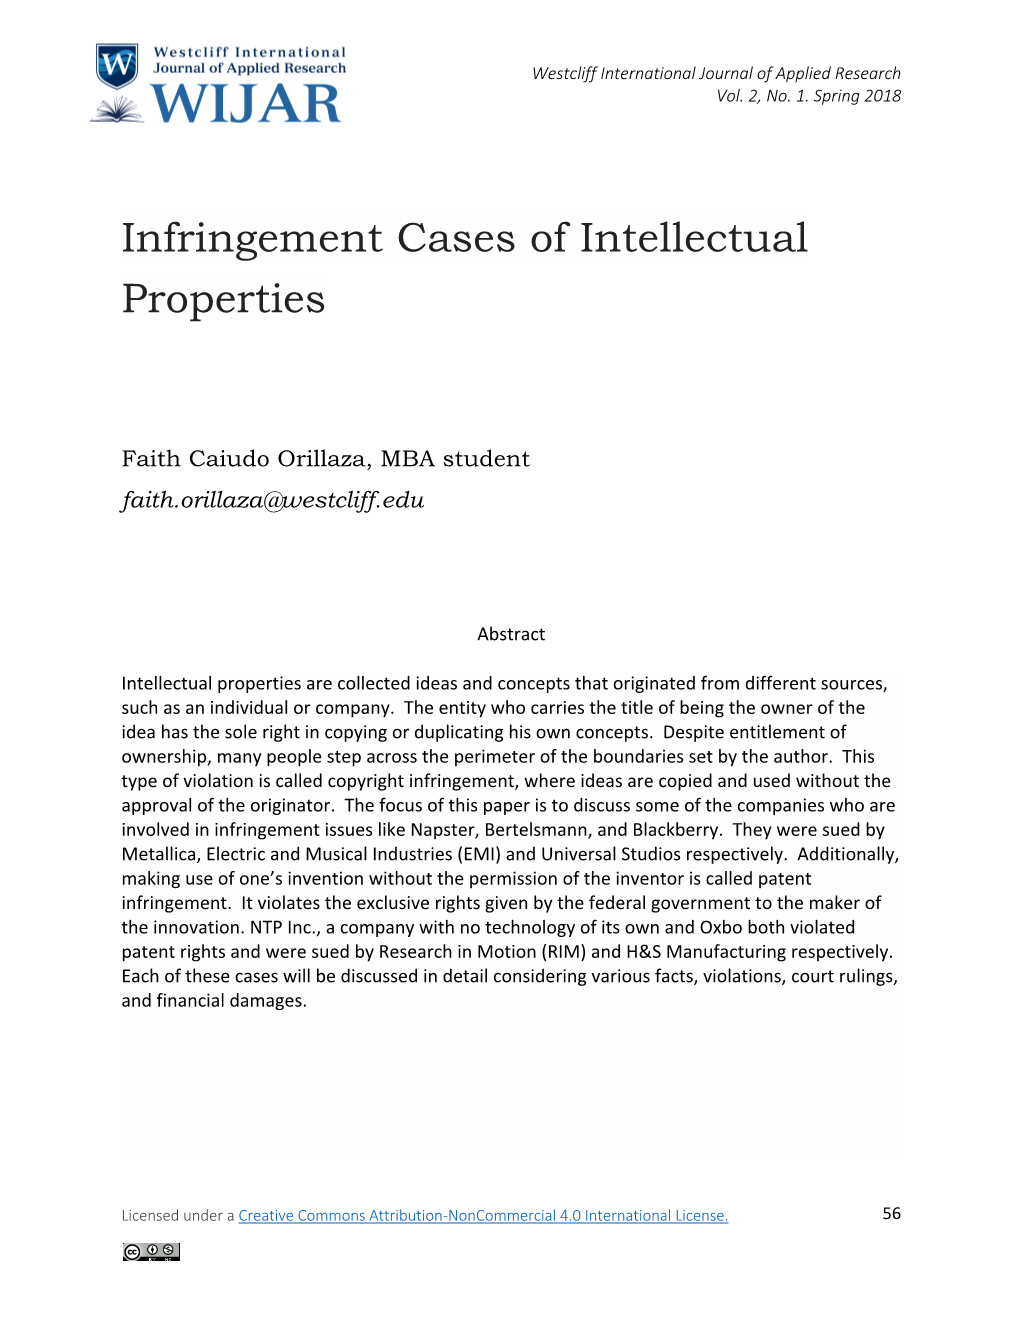 Infringement Cases of Intellectual Properties